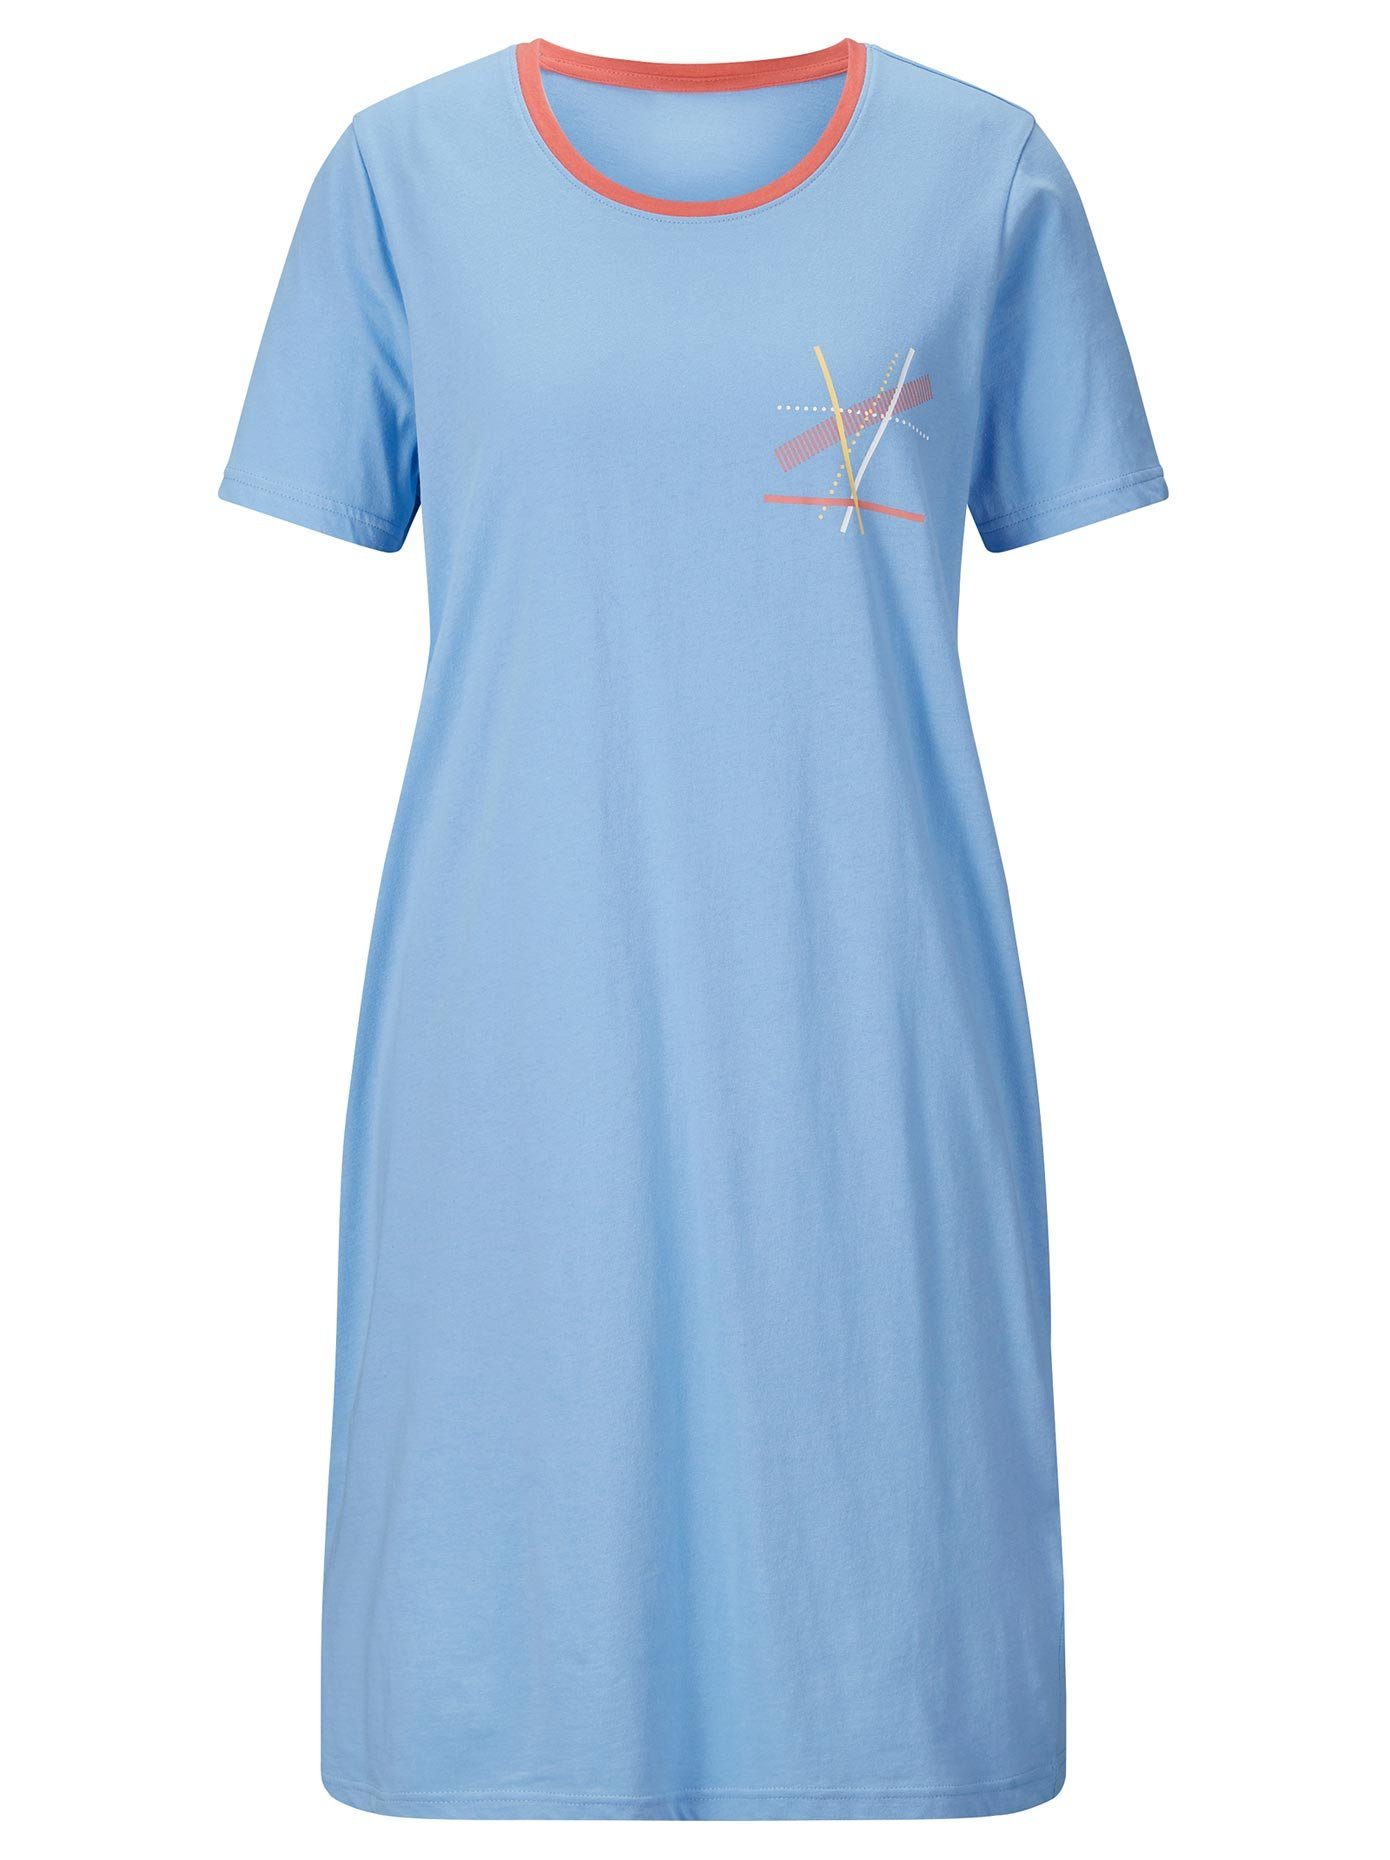 Wäsche/Bademode Nachtwäsche wäschepur Sleepshirt Sleepshirts